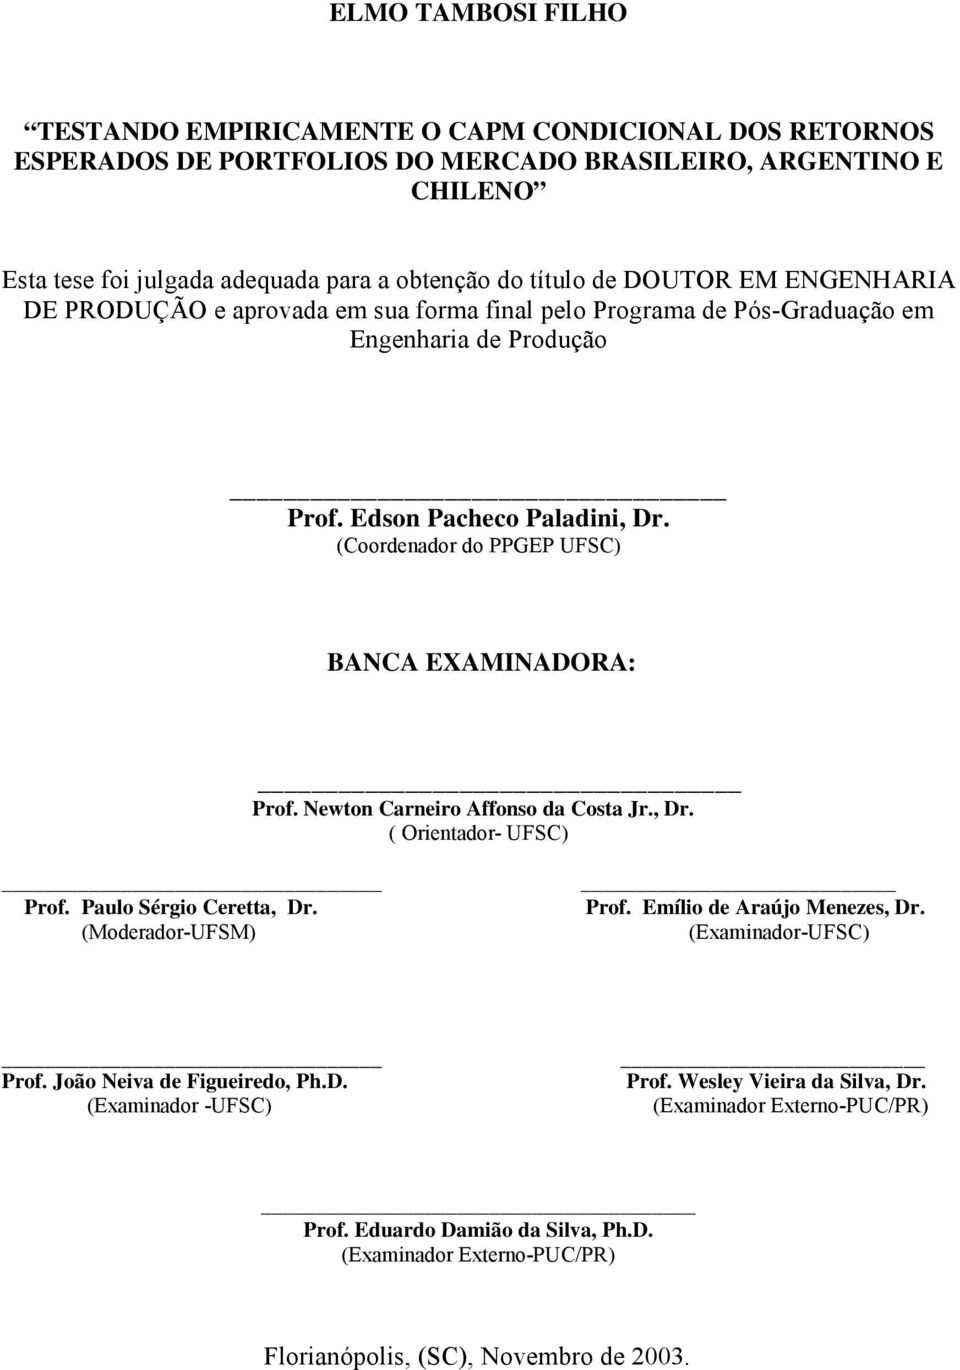 (Coordenador do PPGEP UFSC) BANCA EXAMINADORA: Prof. Newton Carnero Affonso da Costa Jr., Dr. ( Orentador- UFSC) Prof. Paulo Sérgo Ceretta, Dr. (Moderador-UFSM) Prof.